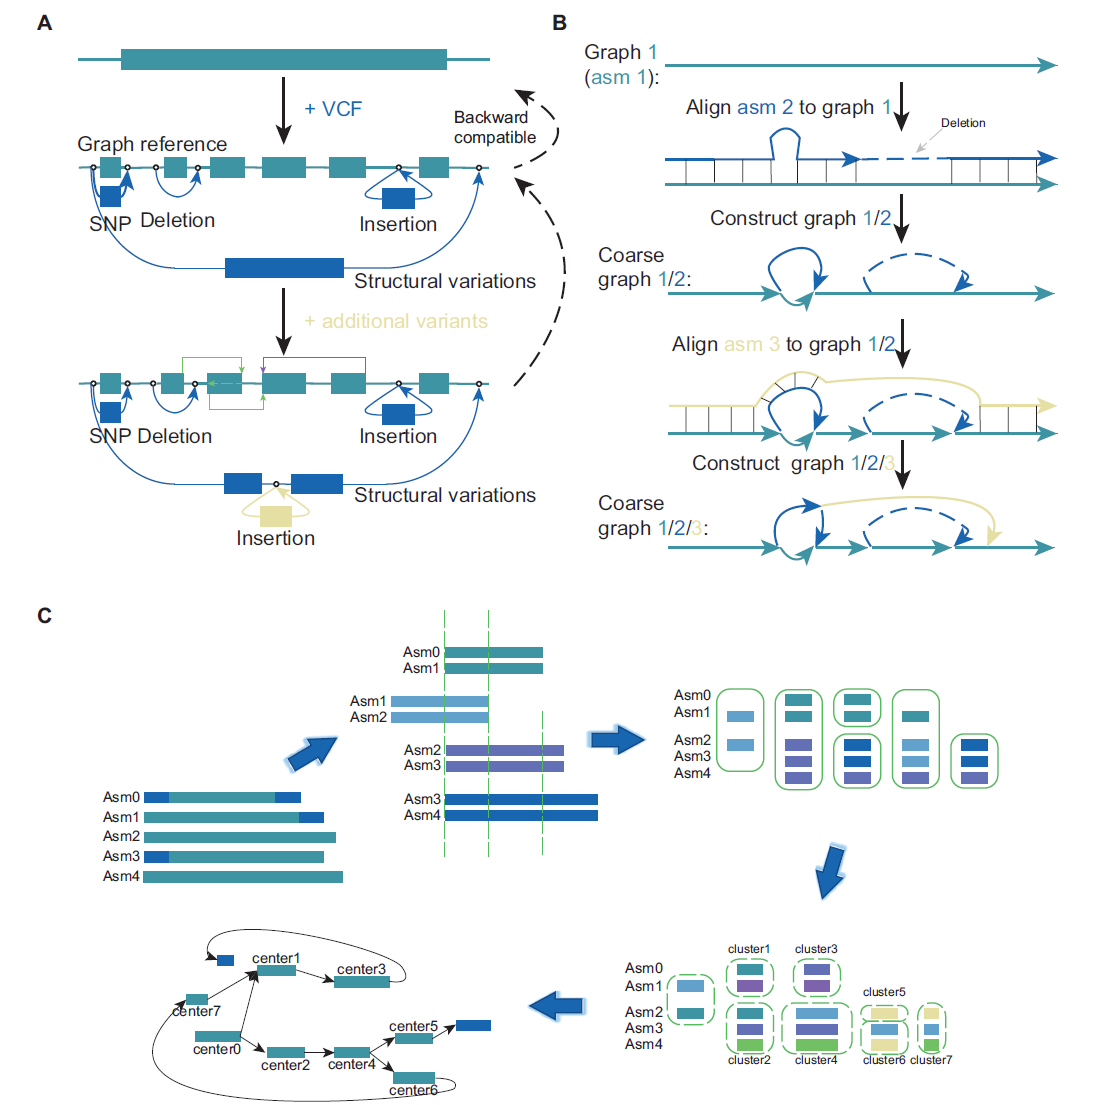 使用不同工具构建图泛的流程。(A) Seven Bridges 和 vg 根据参考基因组和结构变异构建基于图谱的泛基因组。
该图可根据新的变异信息进行扩展，绿线和紫线分别表示由 vg 完全支持的双向边缘和循环边缘。(B) minigraph 直接构建图泛。通过将基因组迭代比对到现有图来增强图泛。(C) MGR 通过同时比较多个基因组来构建图泛，划分不同的对齐片段，将对齐后的片段聚类，并将聚类中心转换为图的节点。